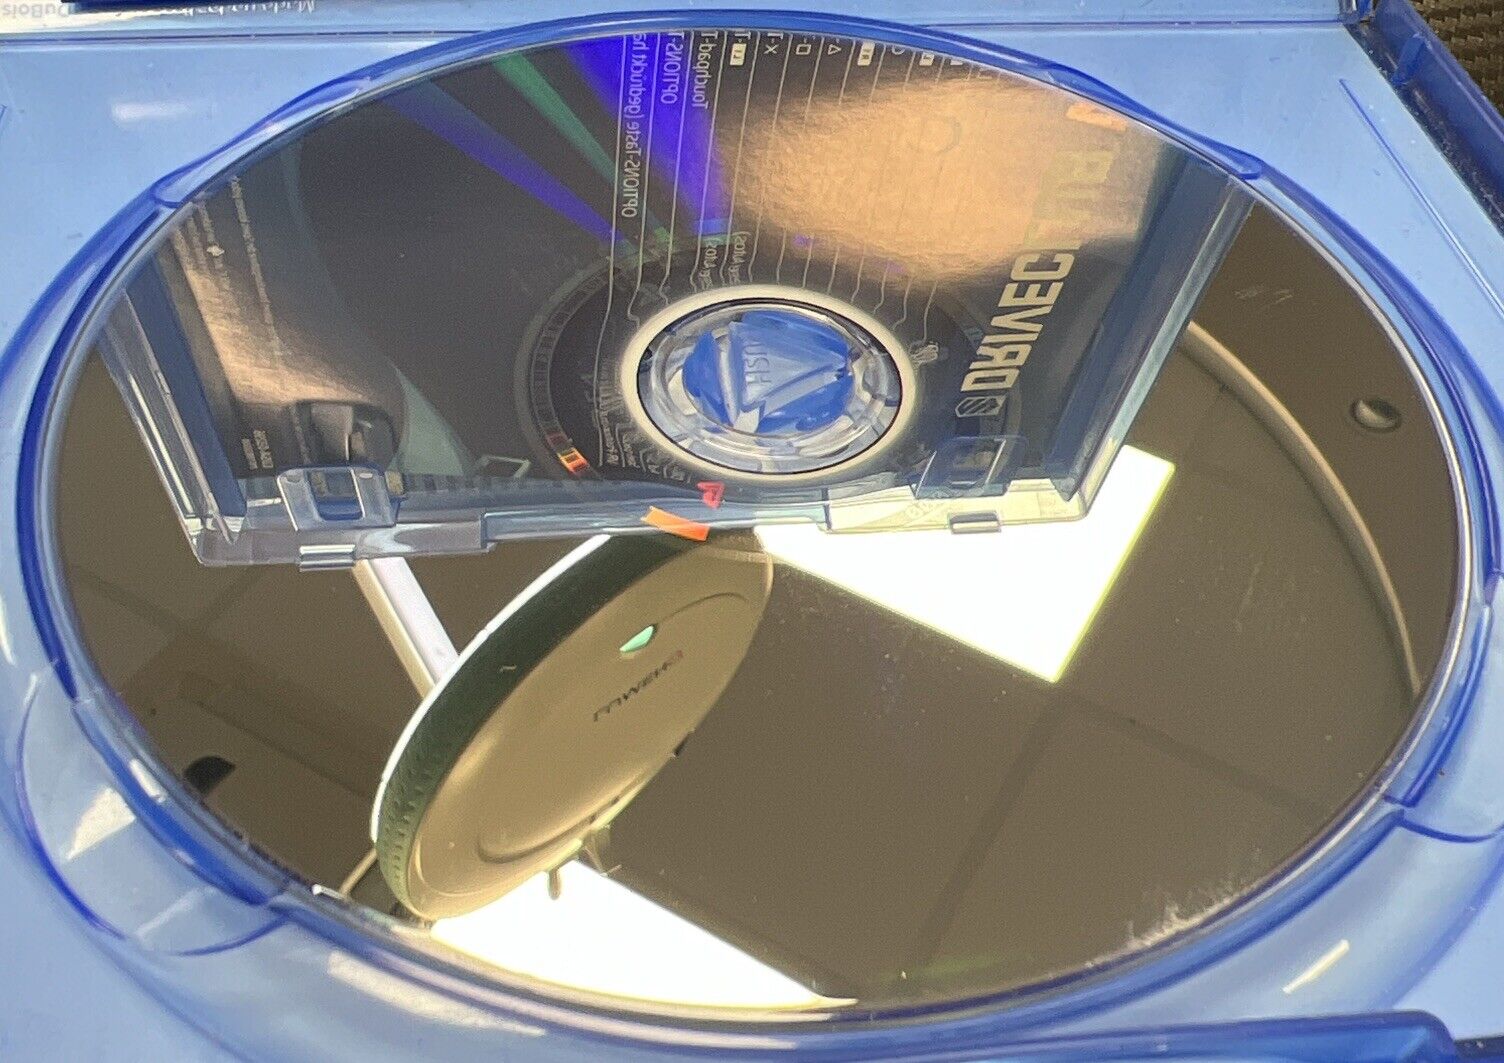 DriveClub VR (Sony PlayStation 4, 2016)